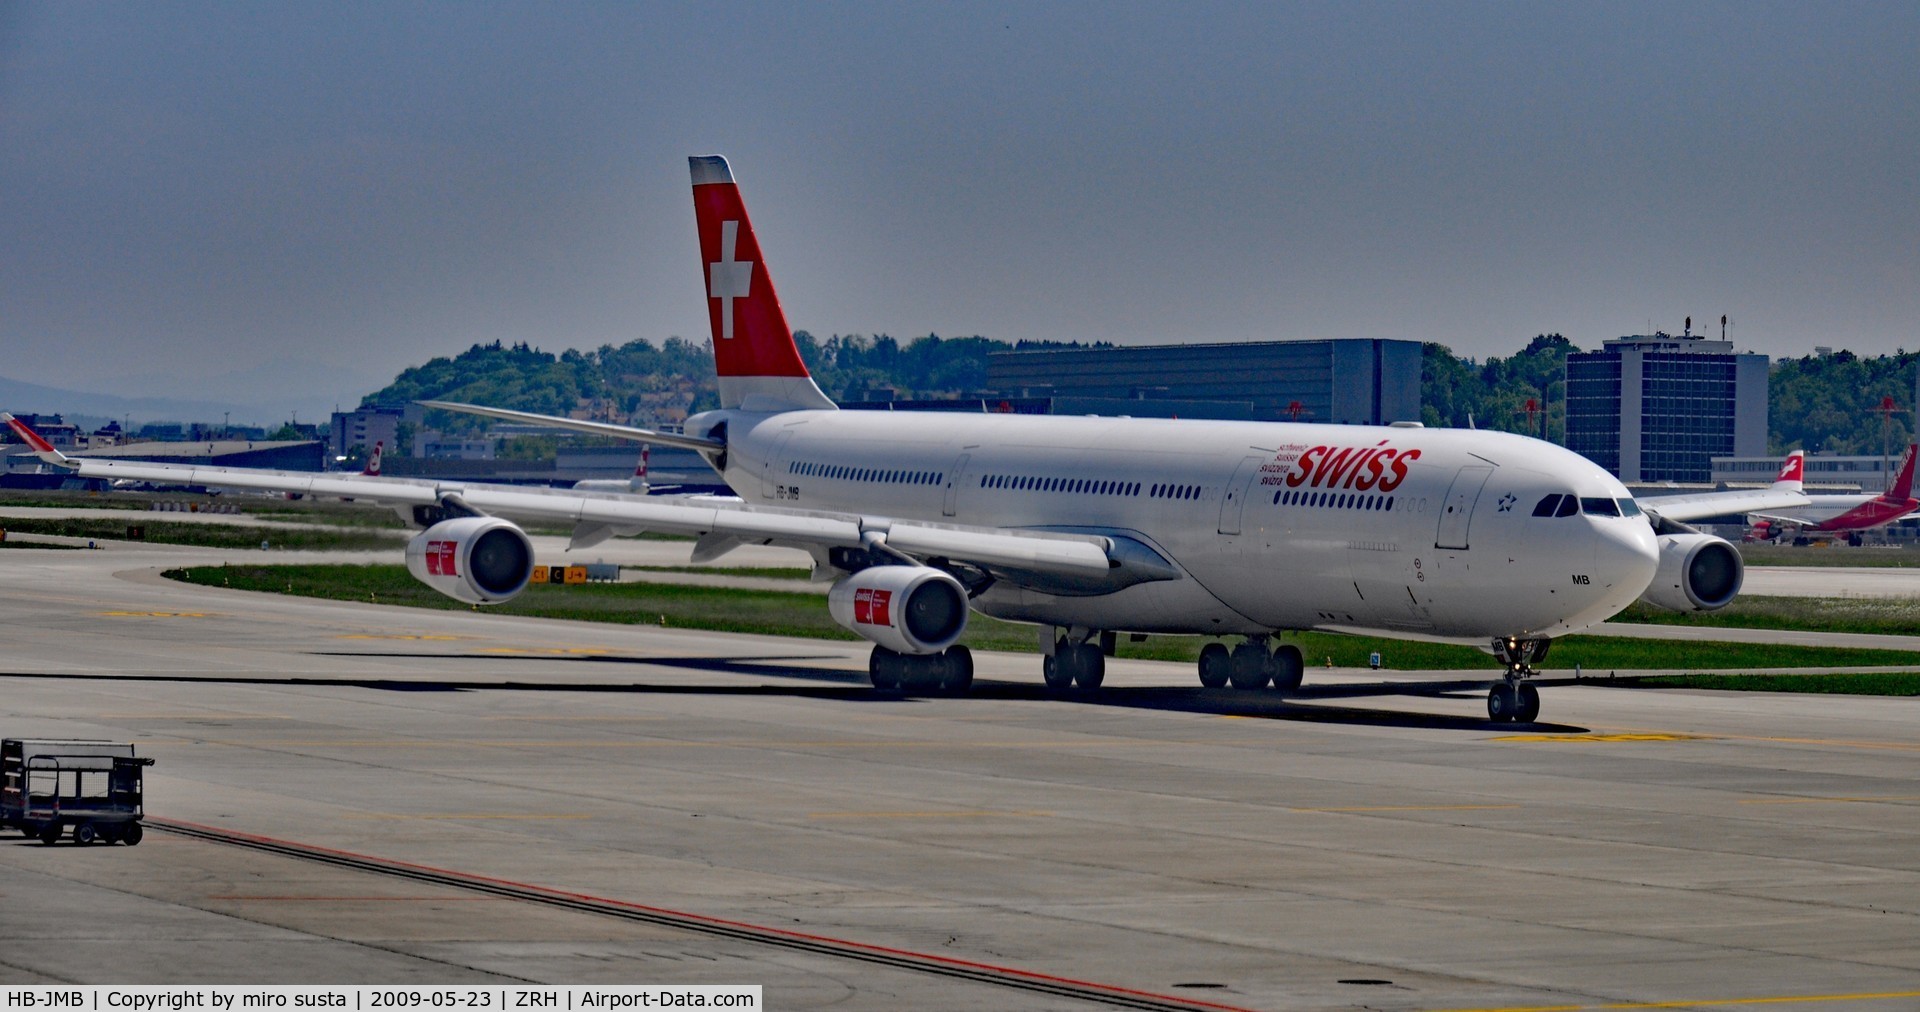 HB-JMB, 2003 Airbus A340-313 C/N 545, Swiss International Airlines Airbus A340-313 Airplane, Zurich-Kloten International Airport